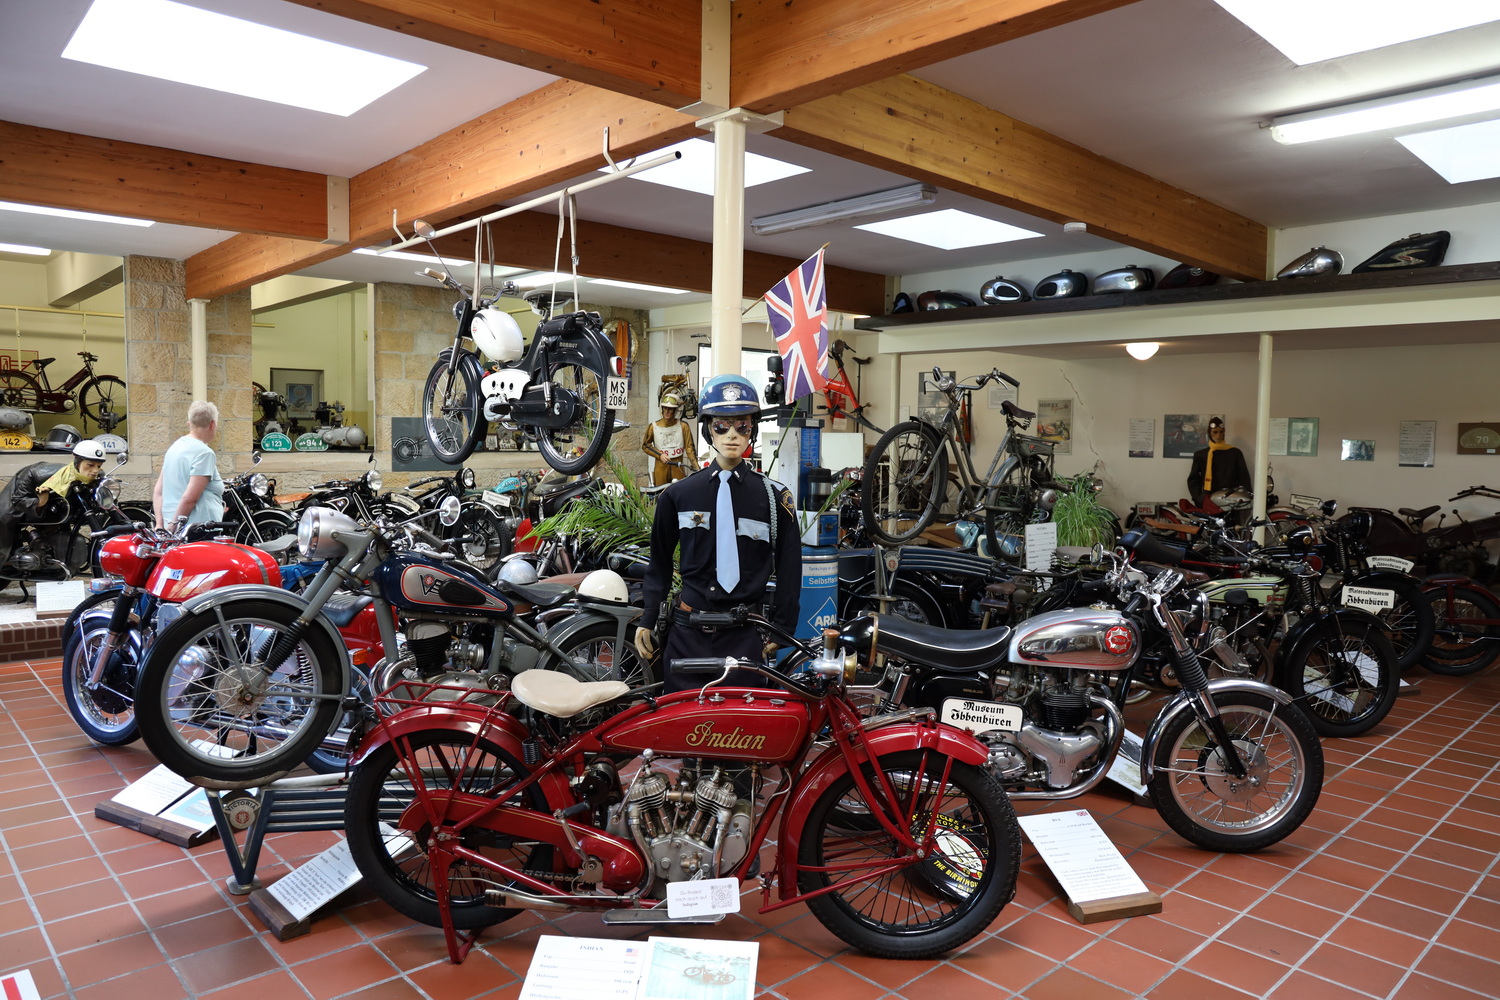 Vorzeigbare Sammlung- Motorrad-Museum Ibbenbüren